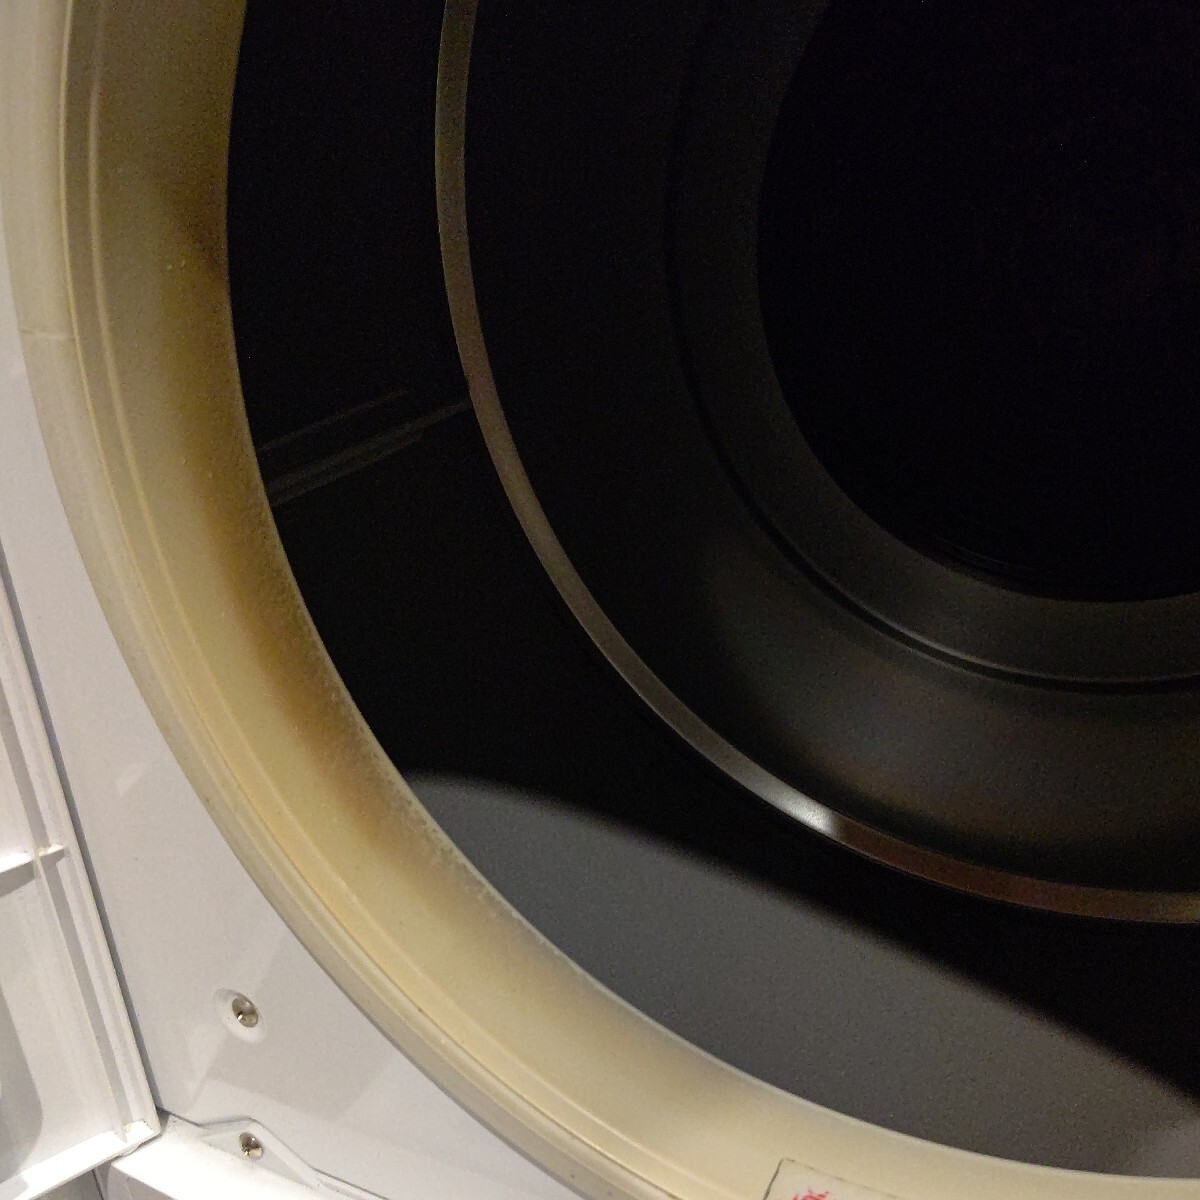 HITACHI Hitachi осушение форма электрический сушильная машина подставка есть DE-N50WV чисто-белый белый 2017 год производства 